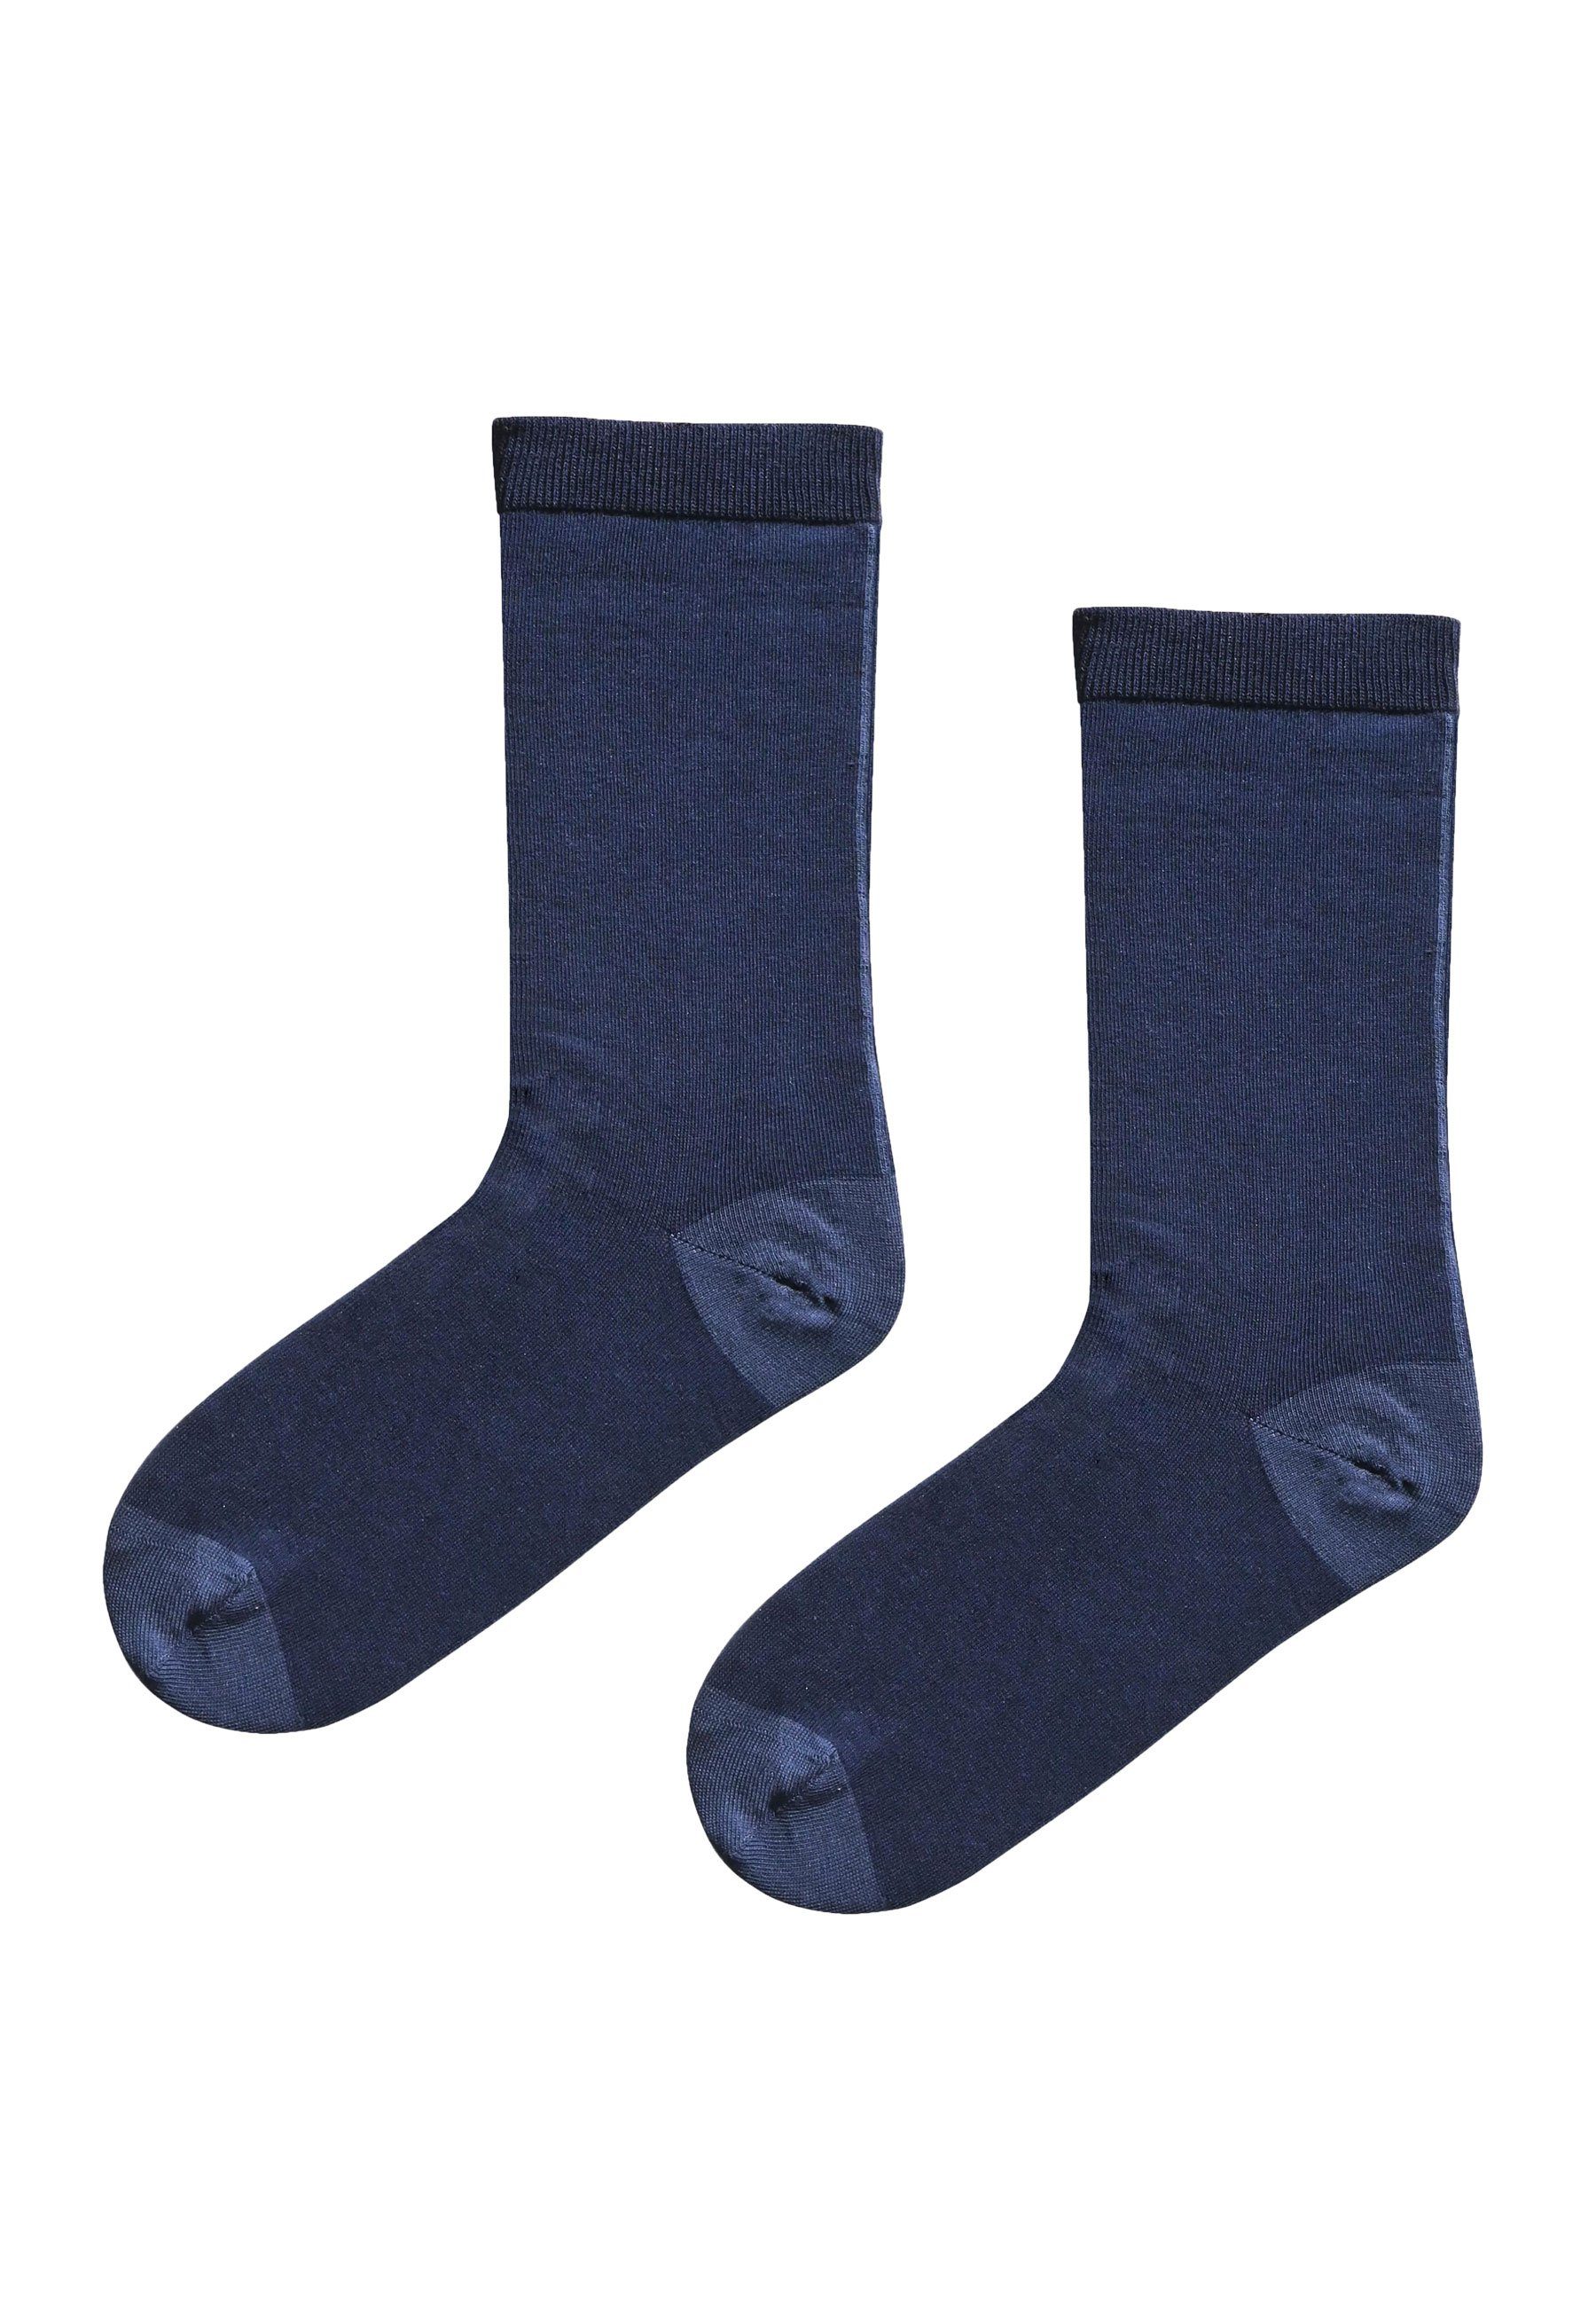 Elkline Socken - Socken Schönefüsschen Schönefüsschen zweifarbig navy blueshadow